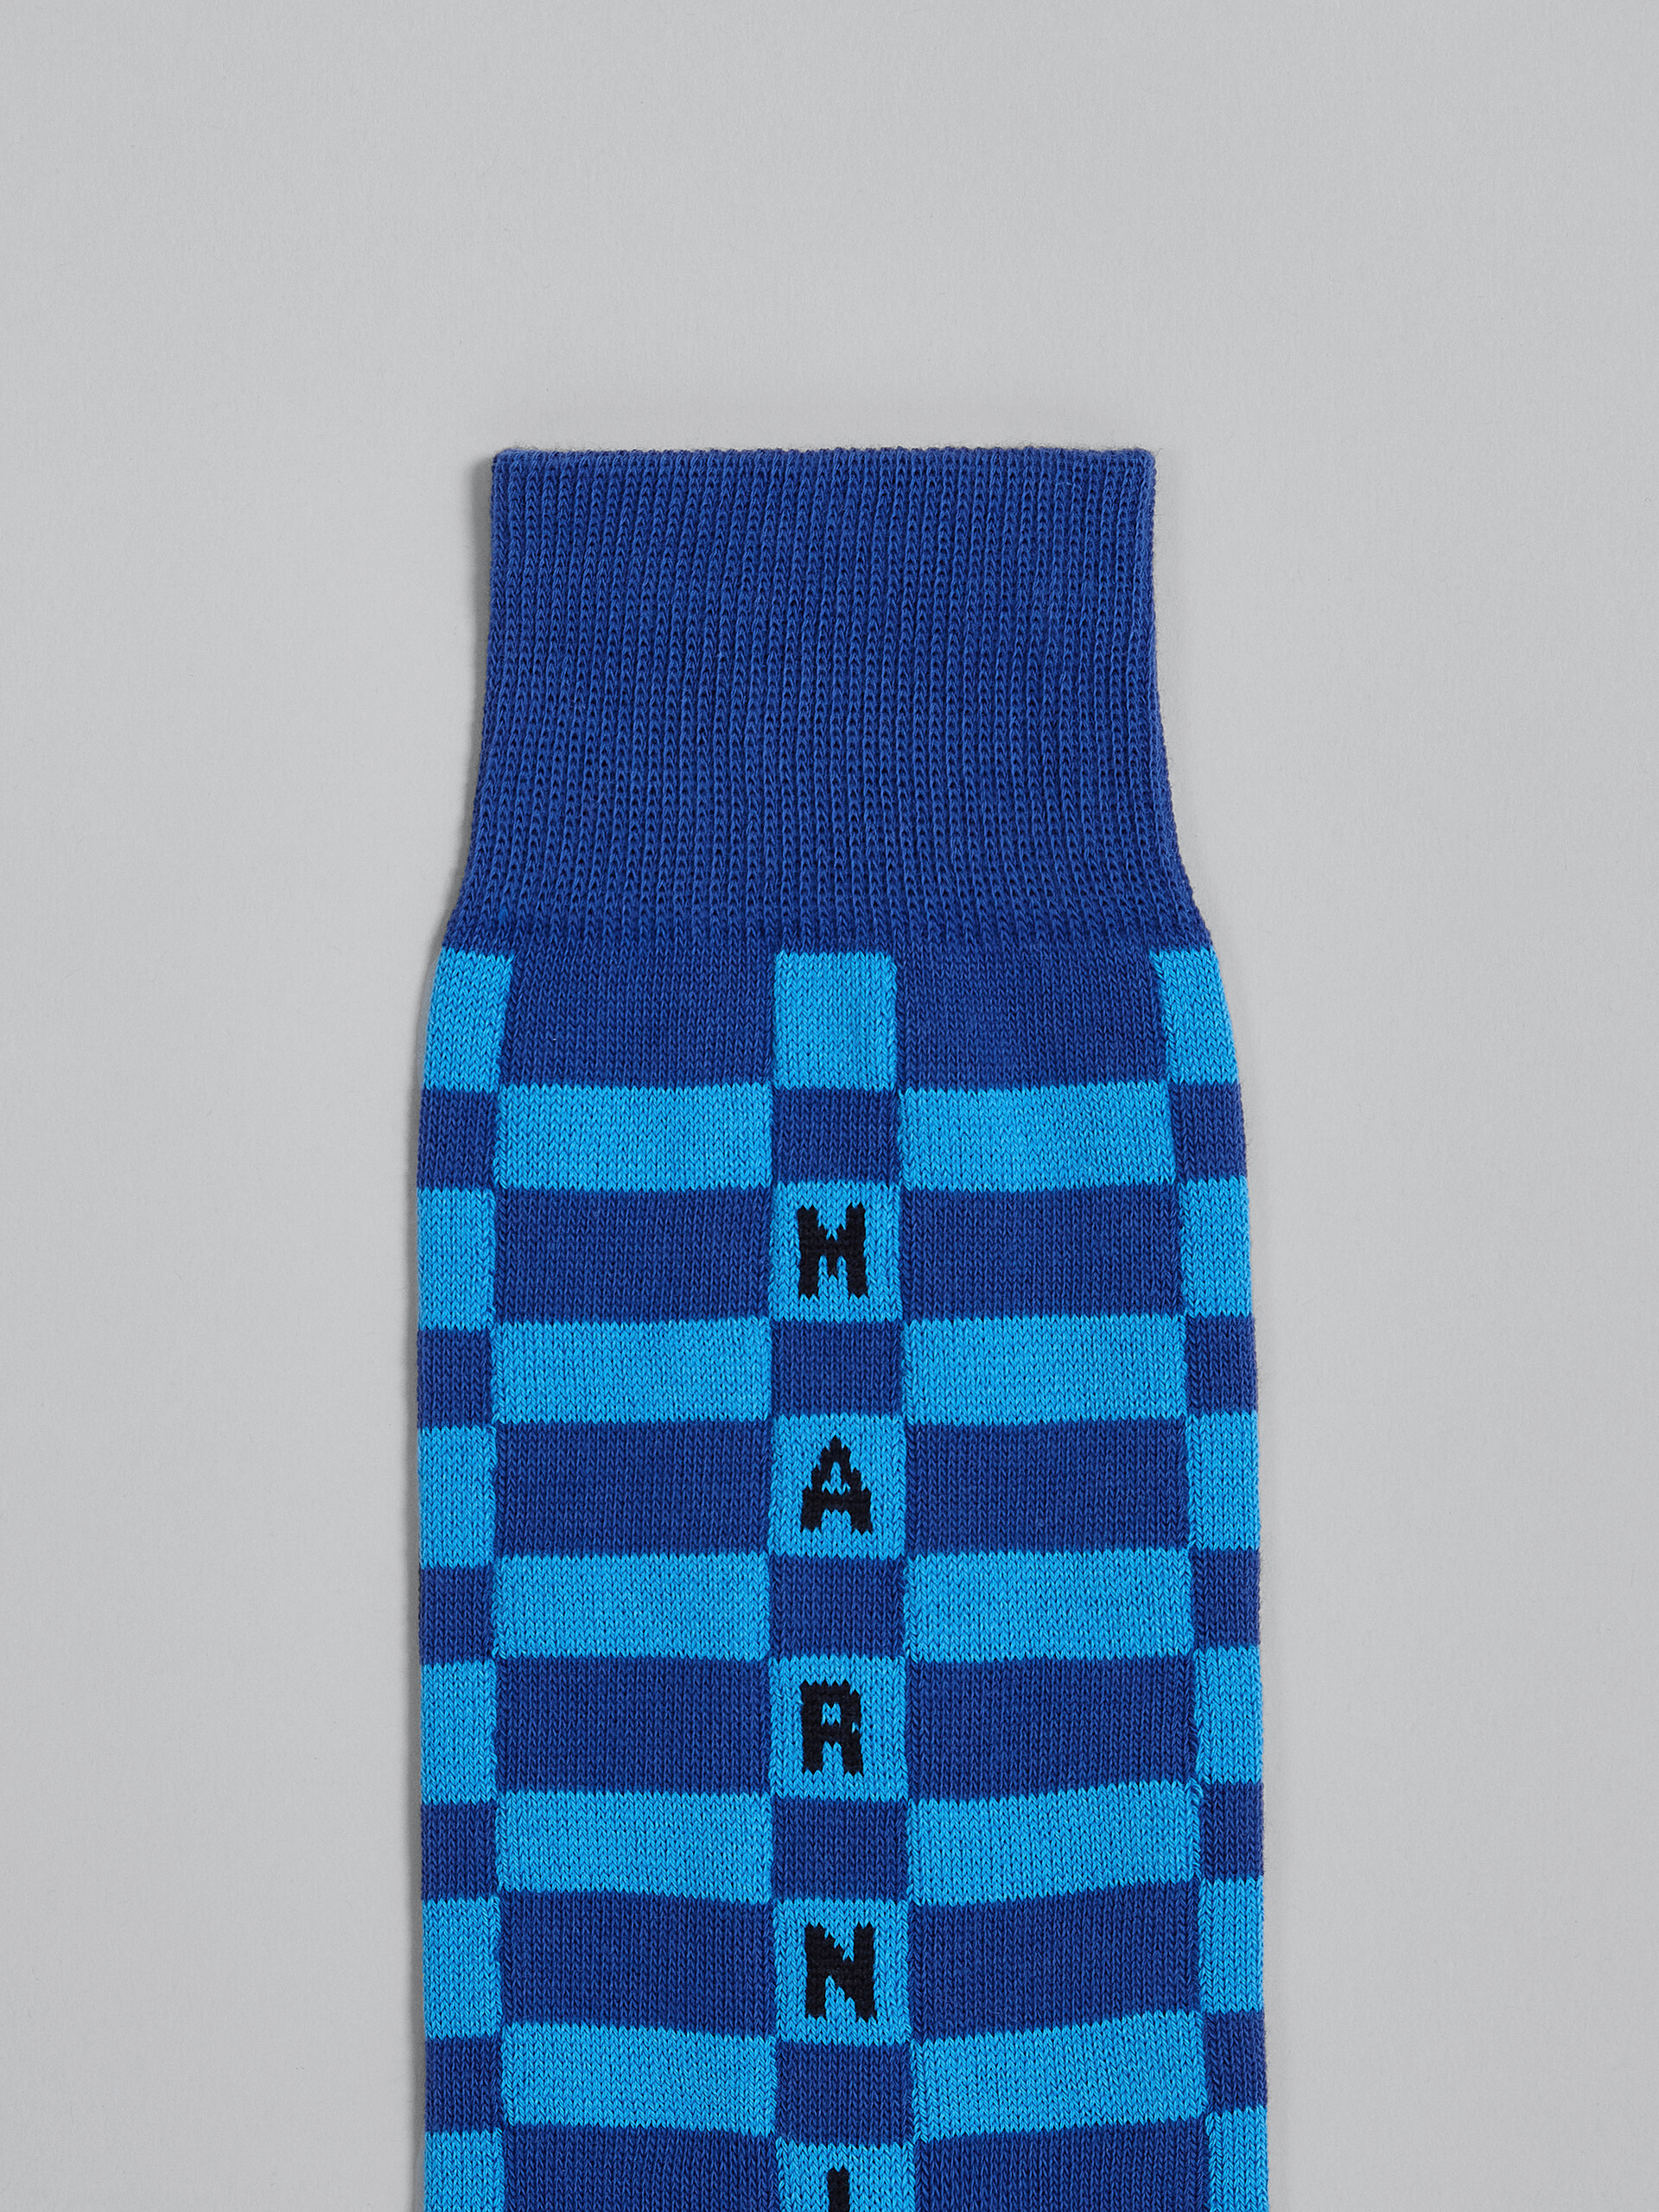 Blaue Socken aus Baumwolle und Nylon - Socken - Image 3